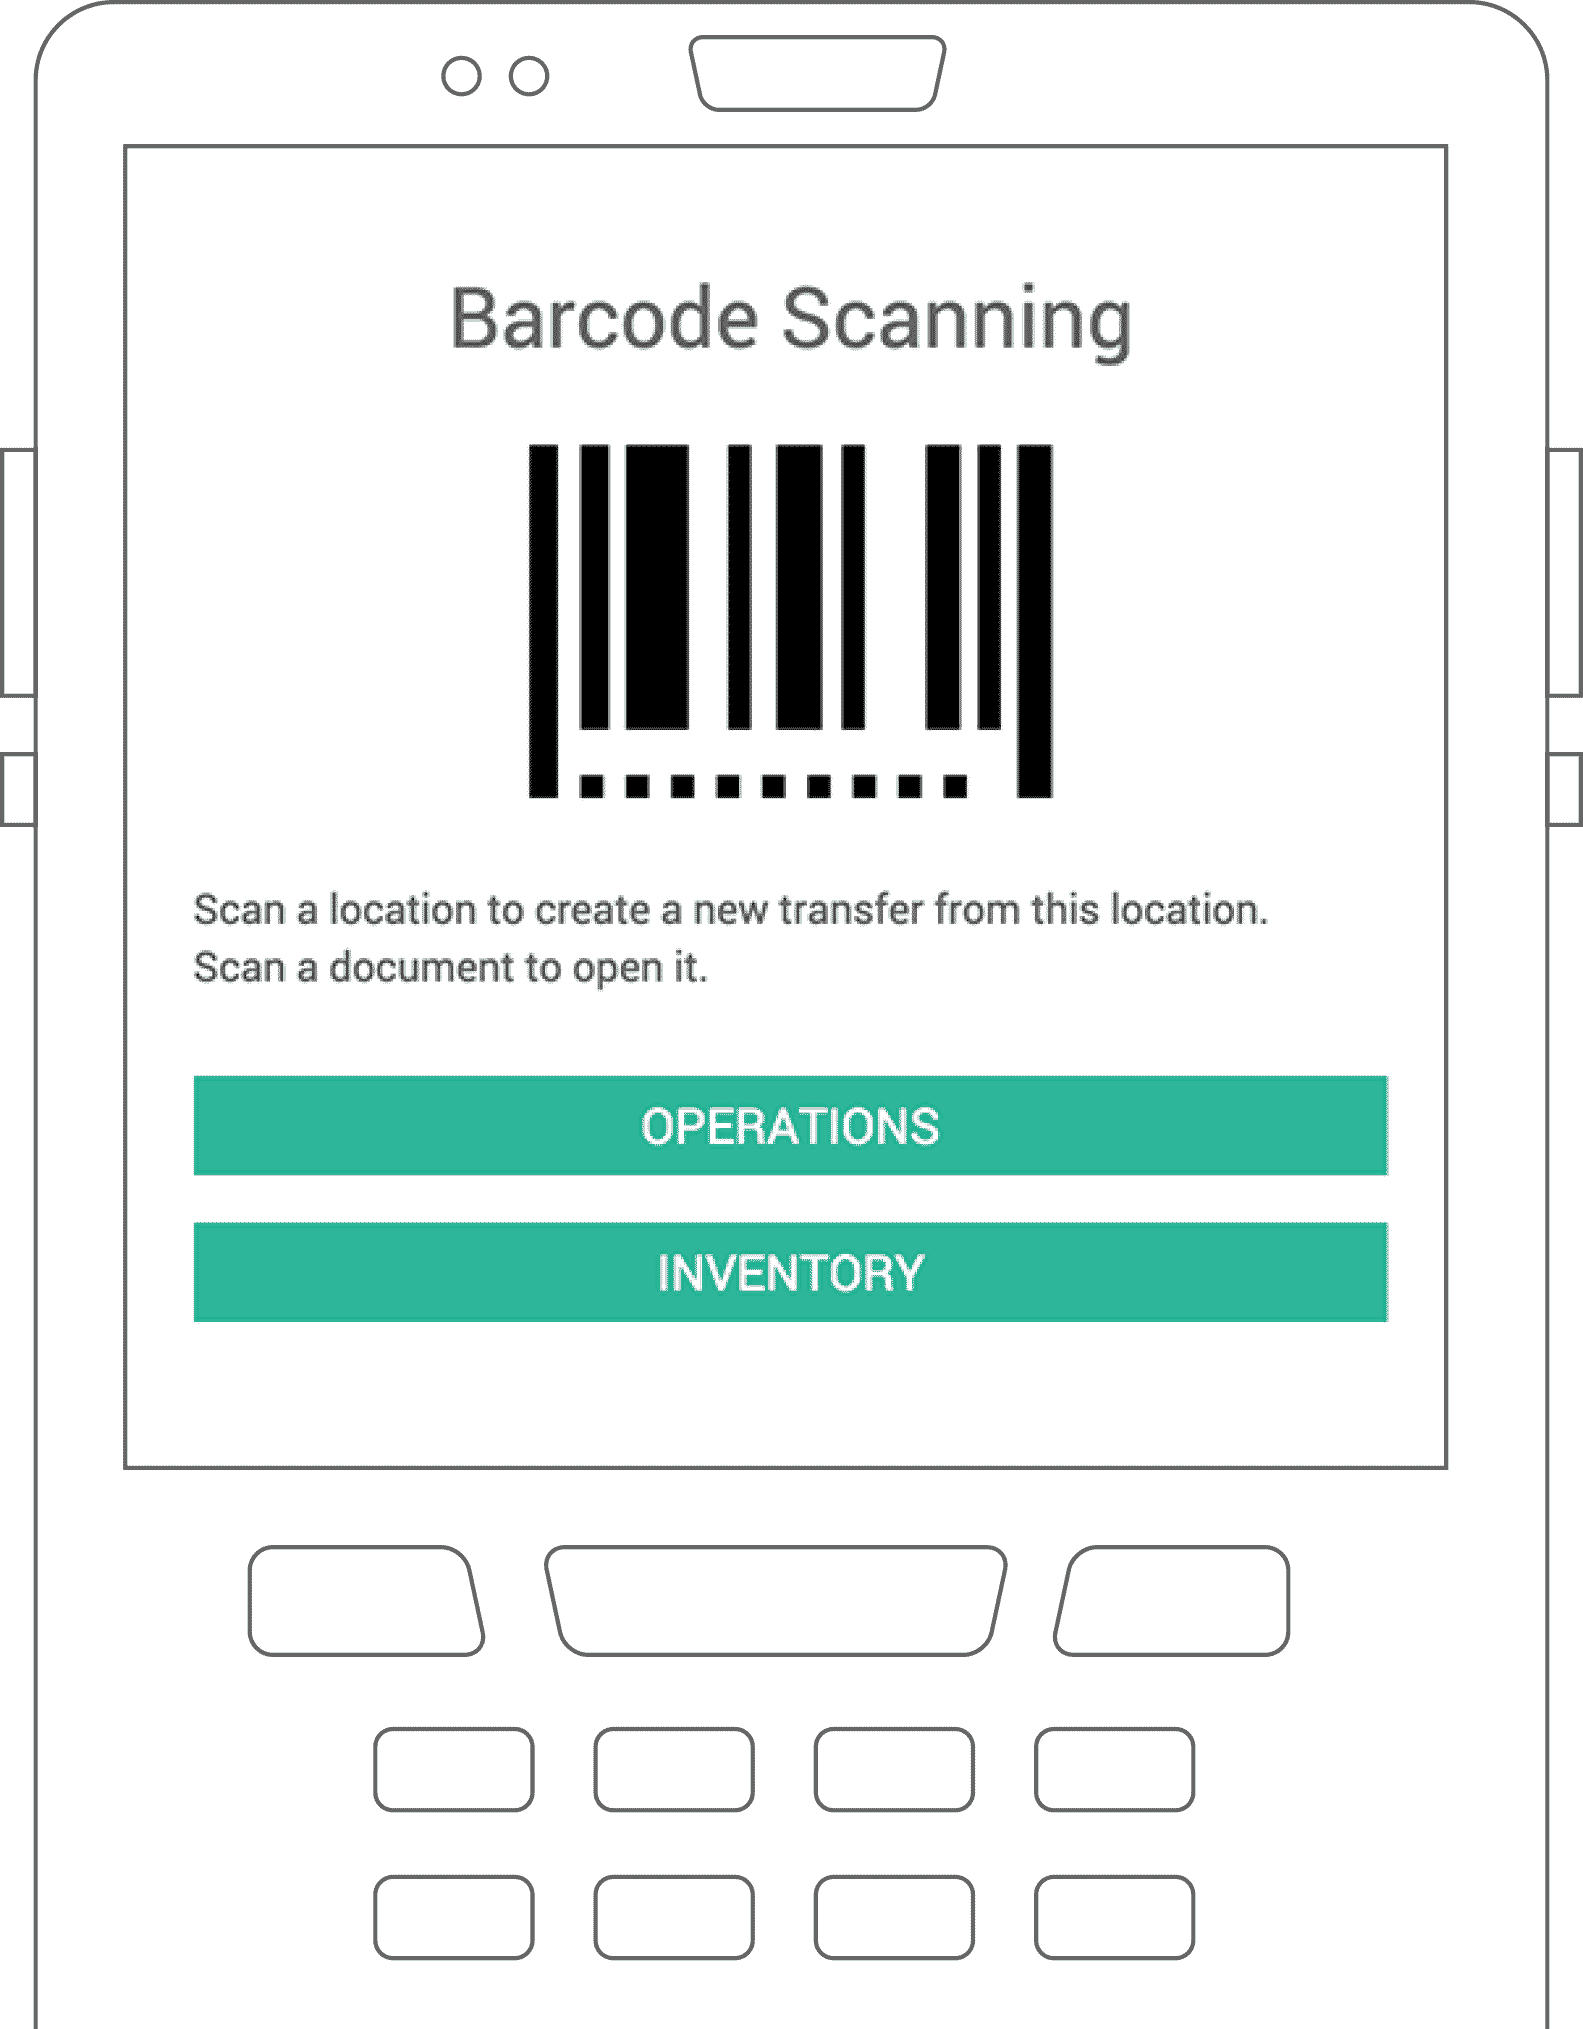 Een barcode scanner